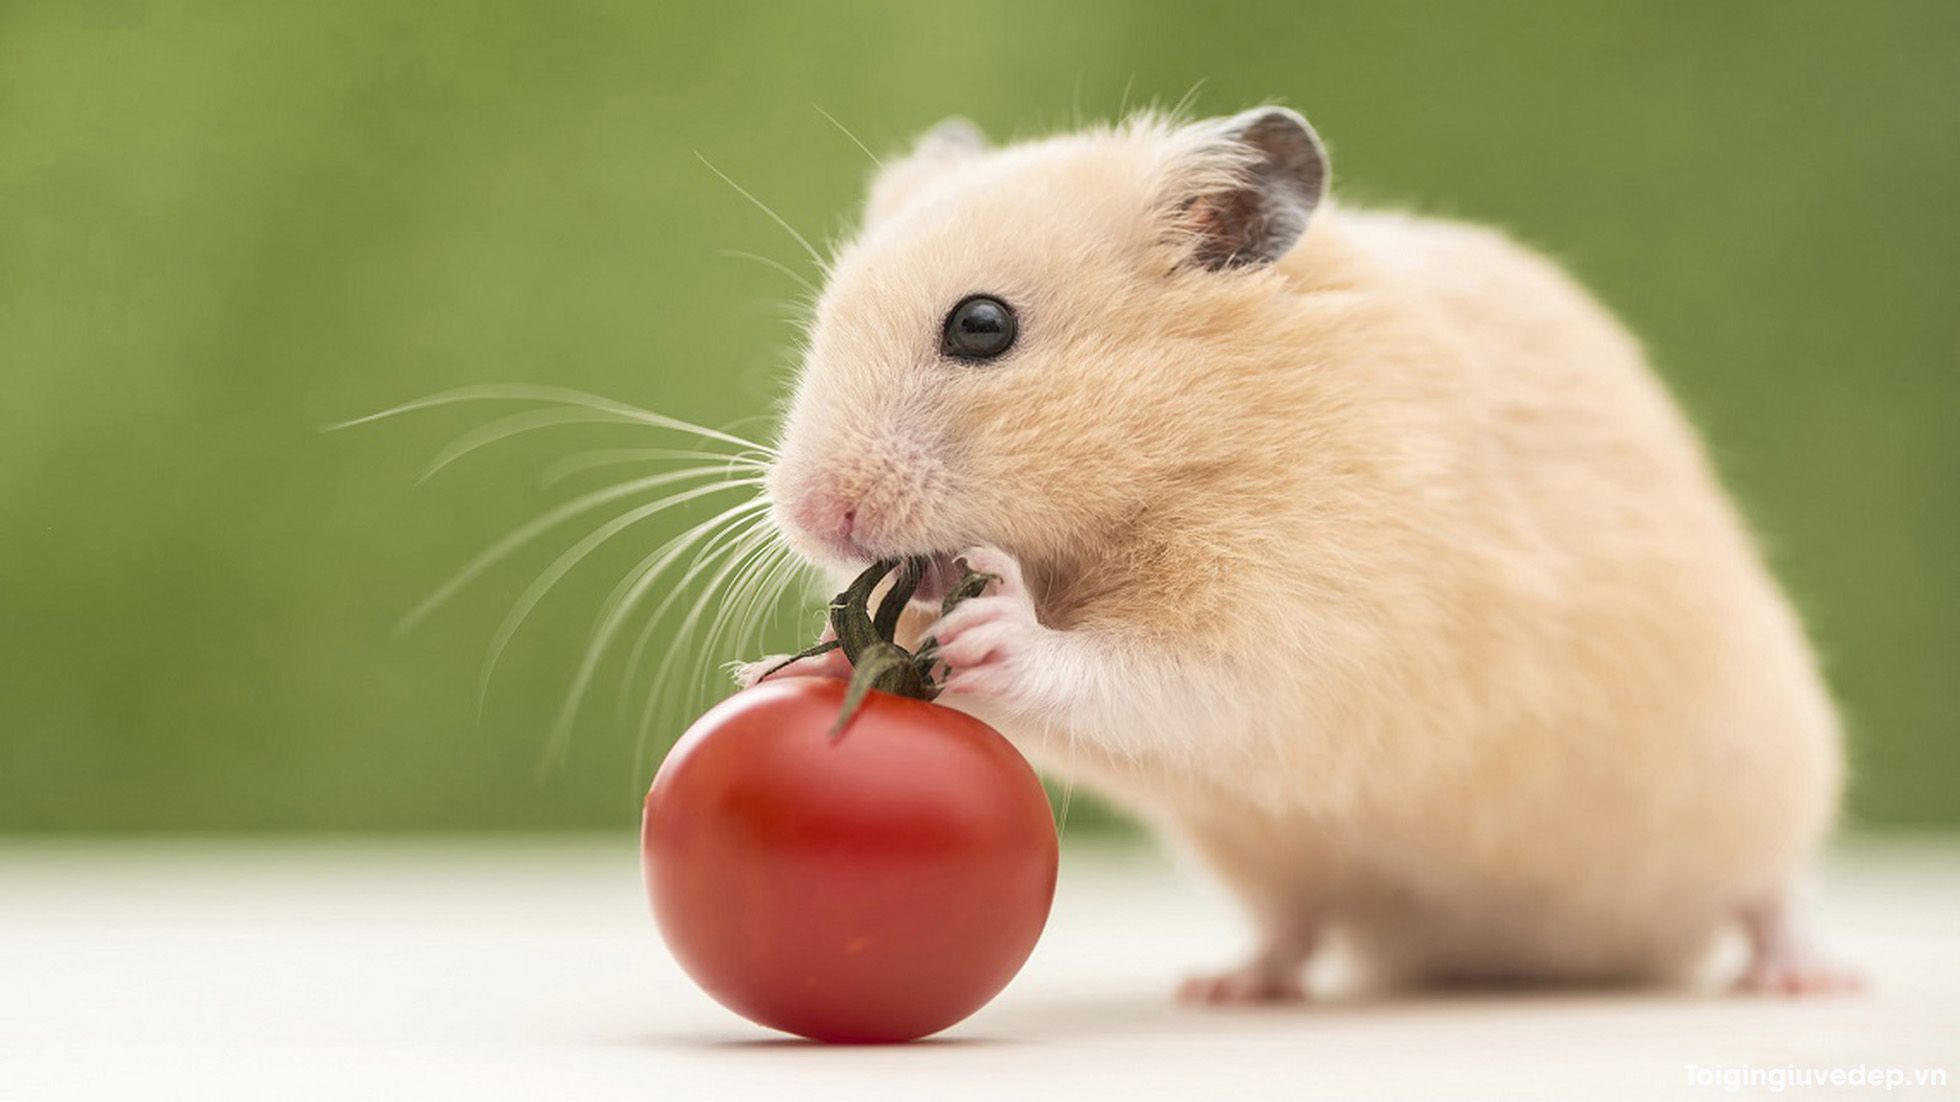 Tìm hiểu về hình chuột cute và những điều thú vị về chúng